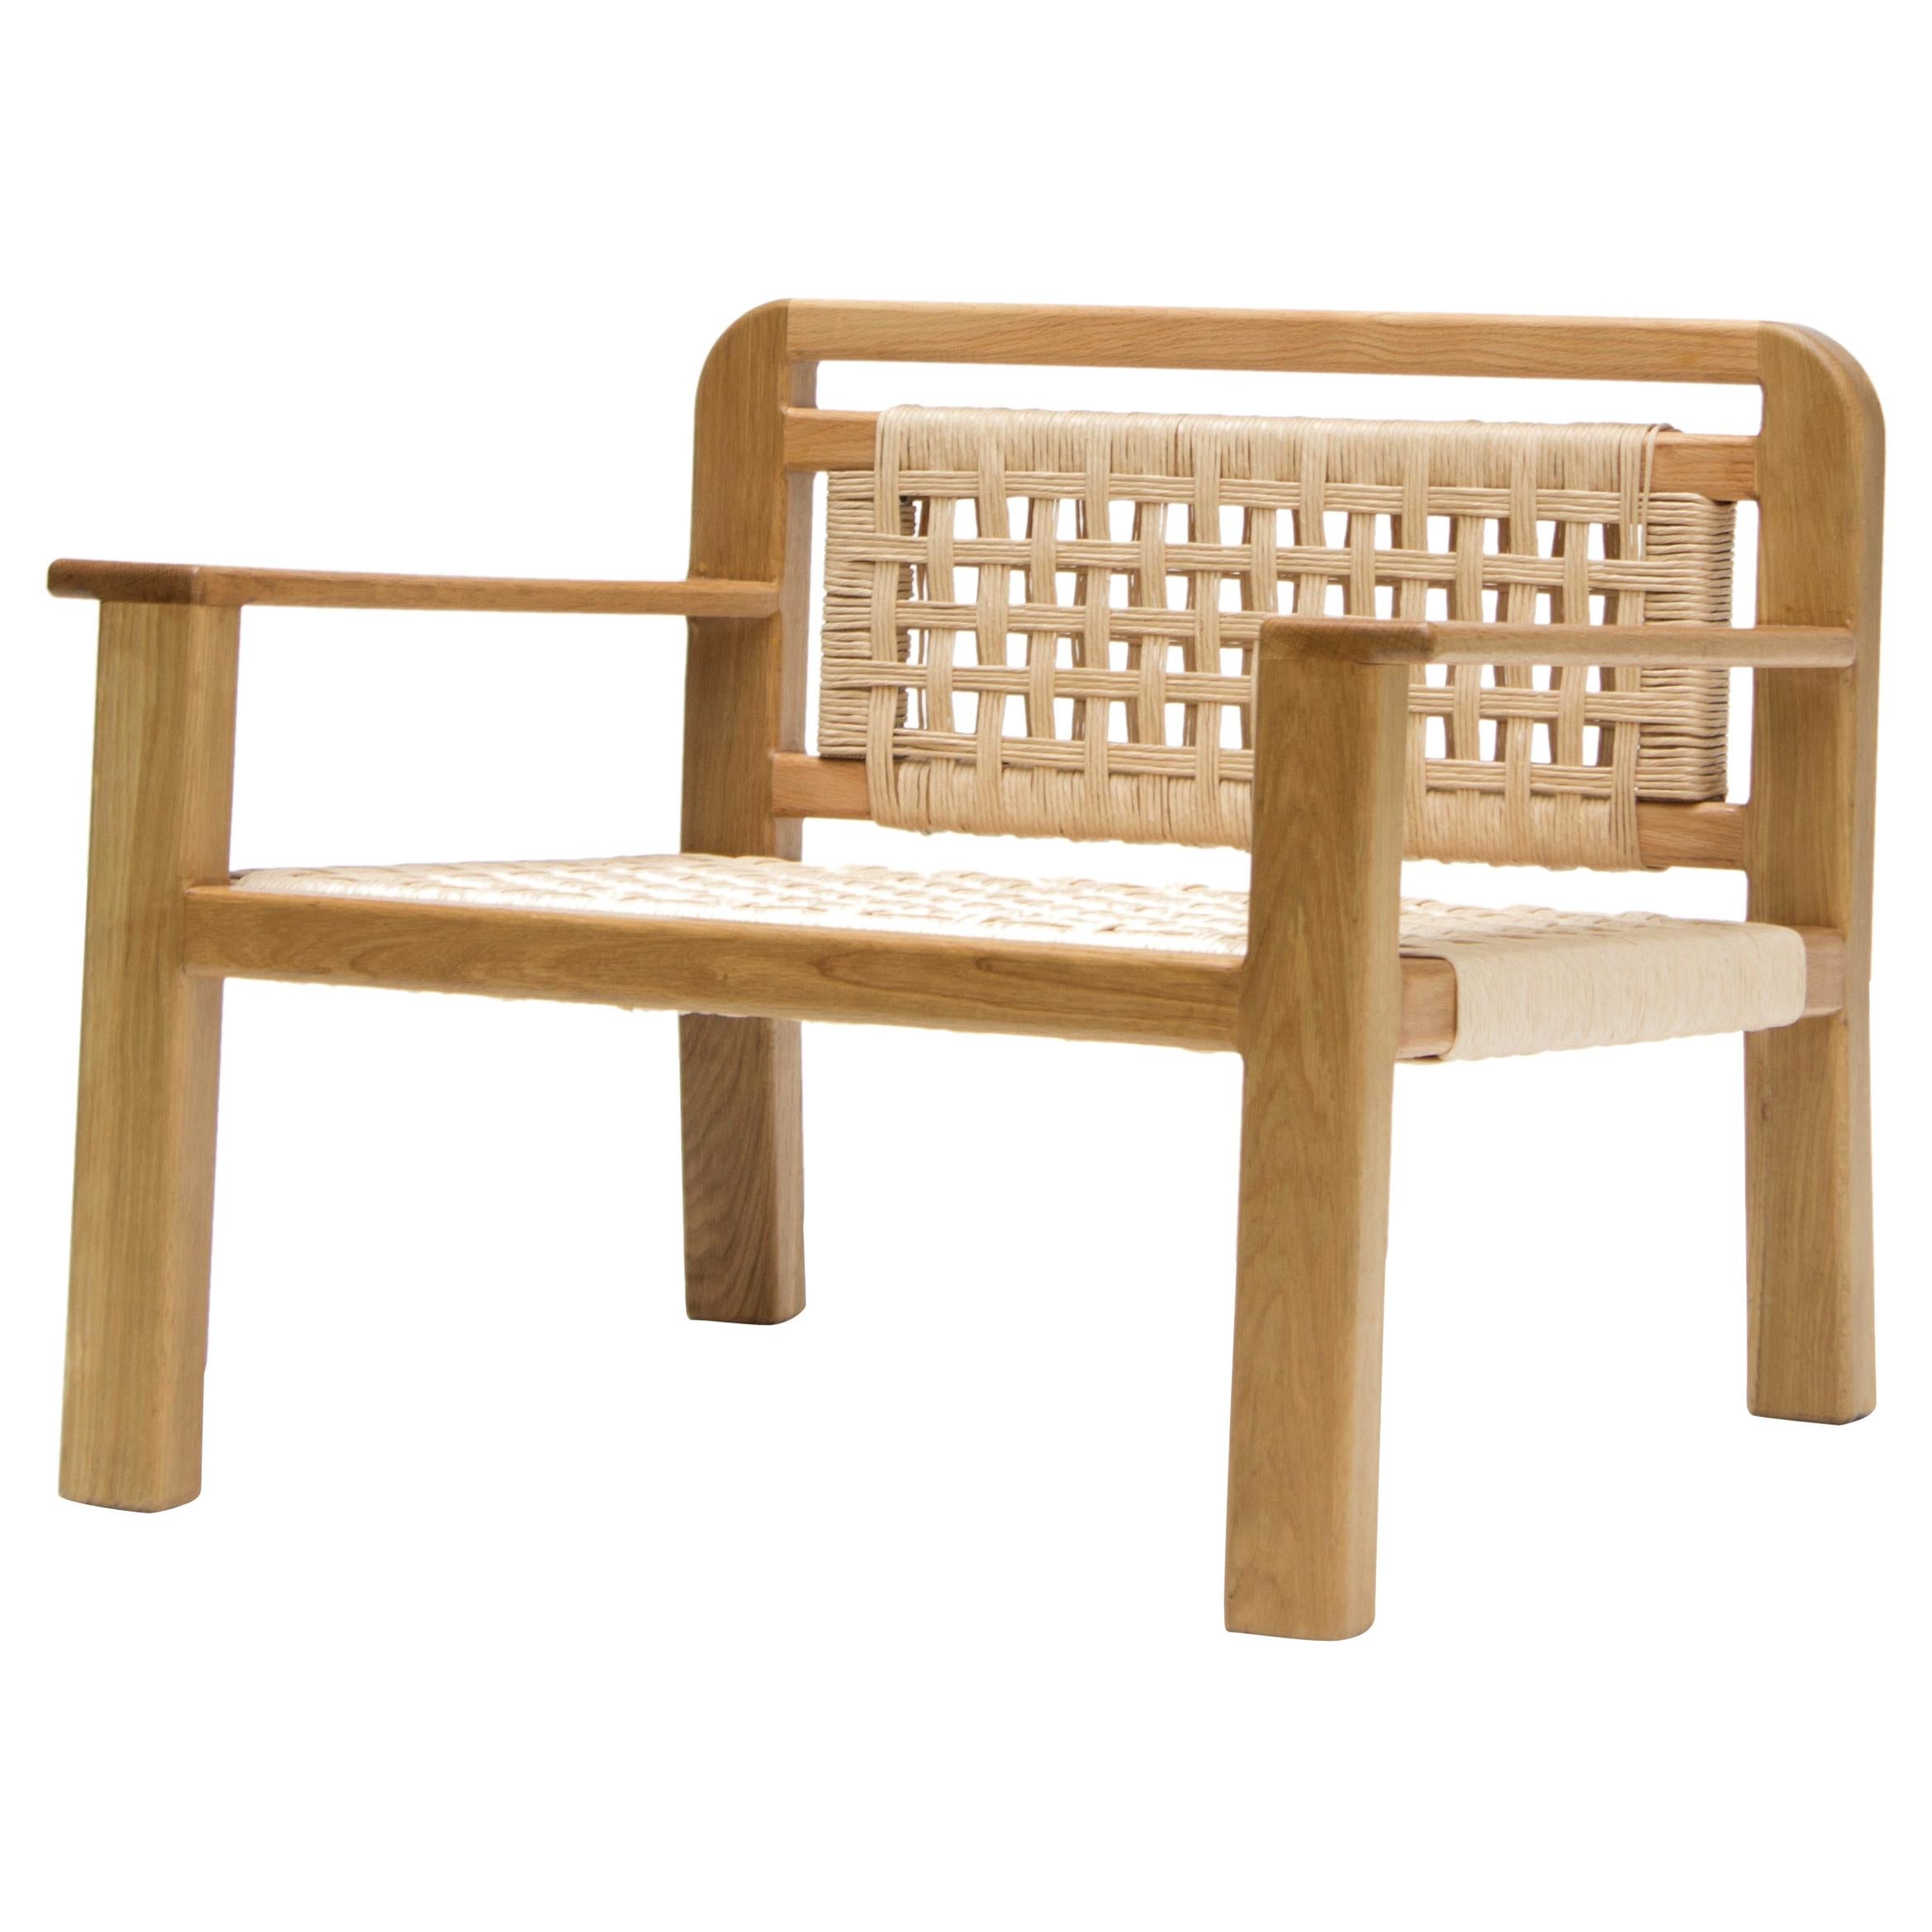 Dieser von der tropischen Moderne inspirierte Sessel August ist eine einzigartige Kreation von León León Design aus Mexiko-Stadt. Er besteht aus einem massiven Eichenholzrahmen mit Papierkordelgeflecht. 

Das Stück wird in unseren Werkstätten in